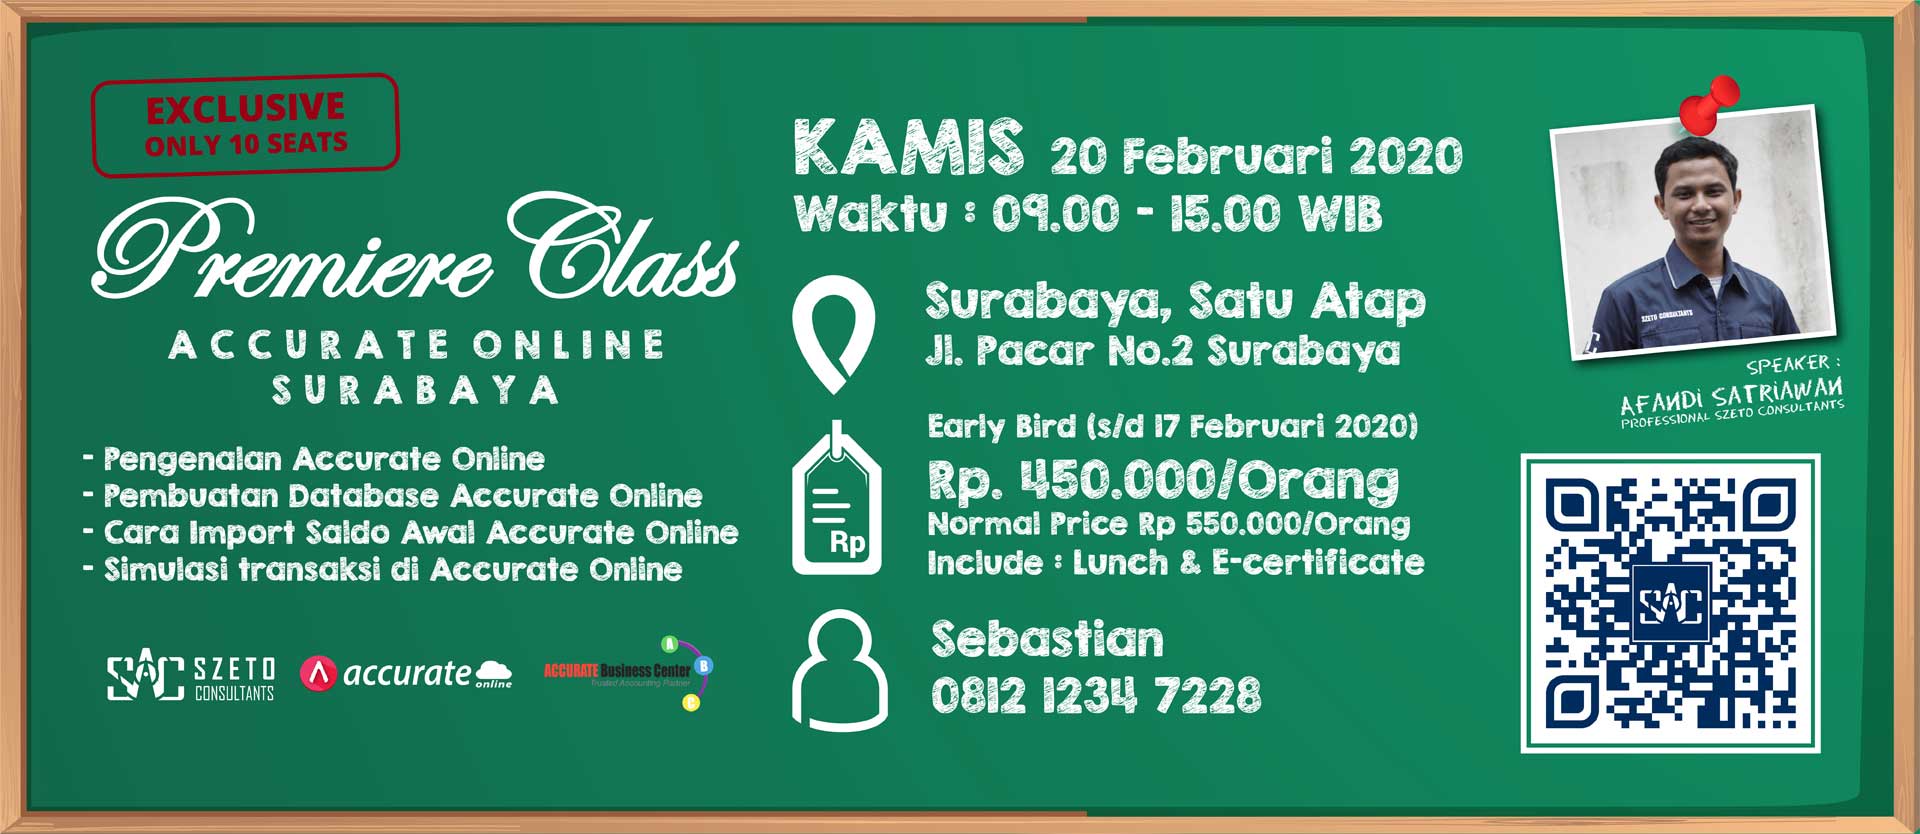 Premiere Class Jakarta Surabaya Februari 2020